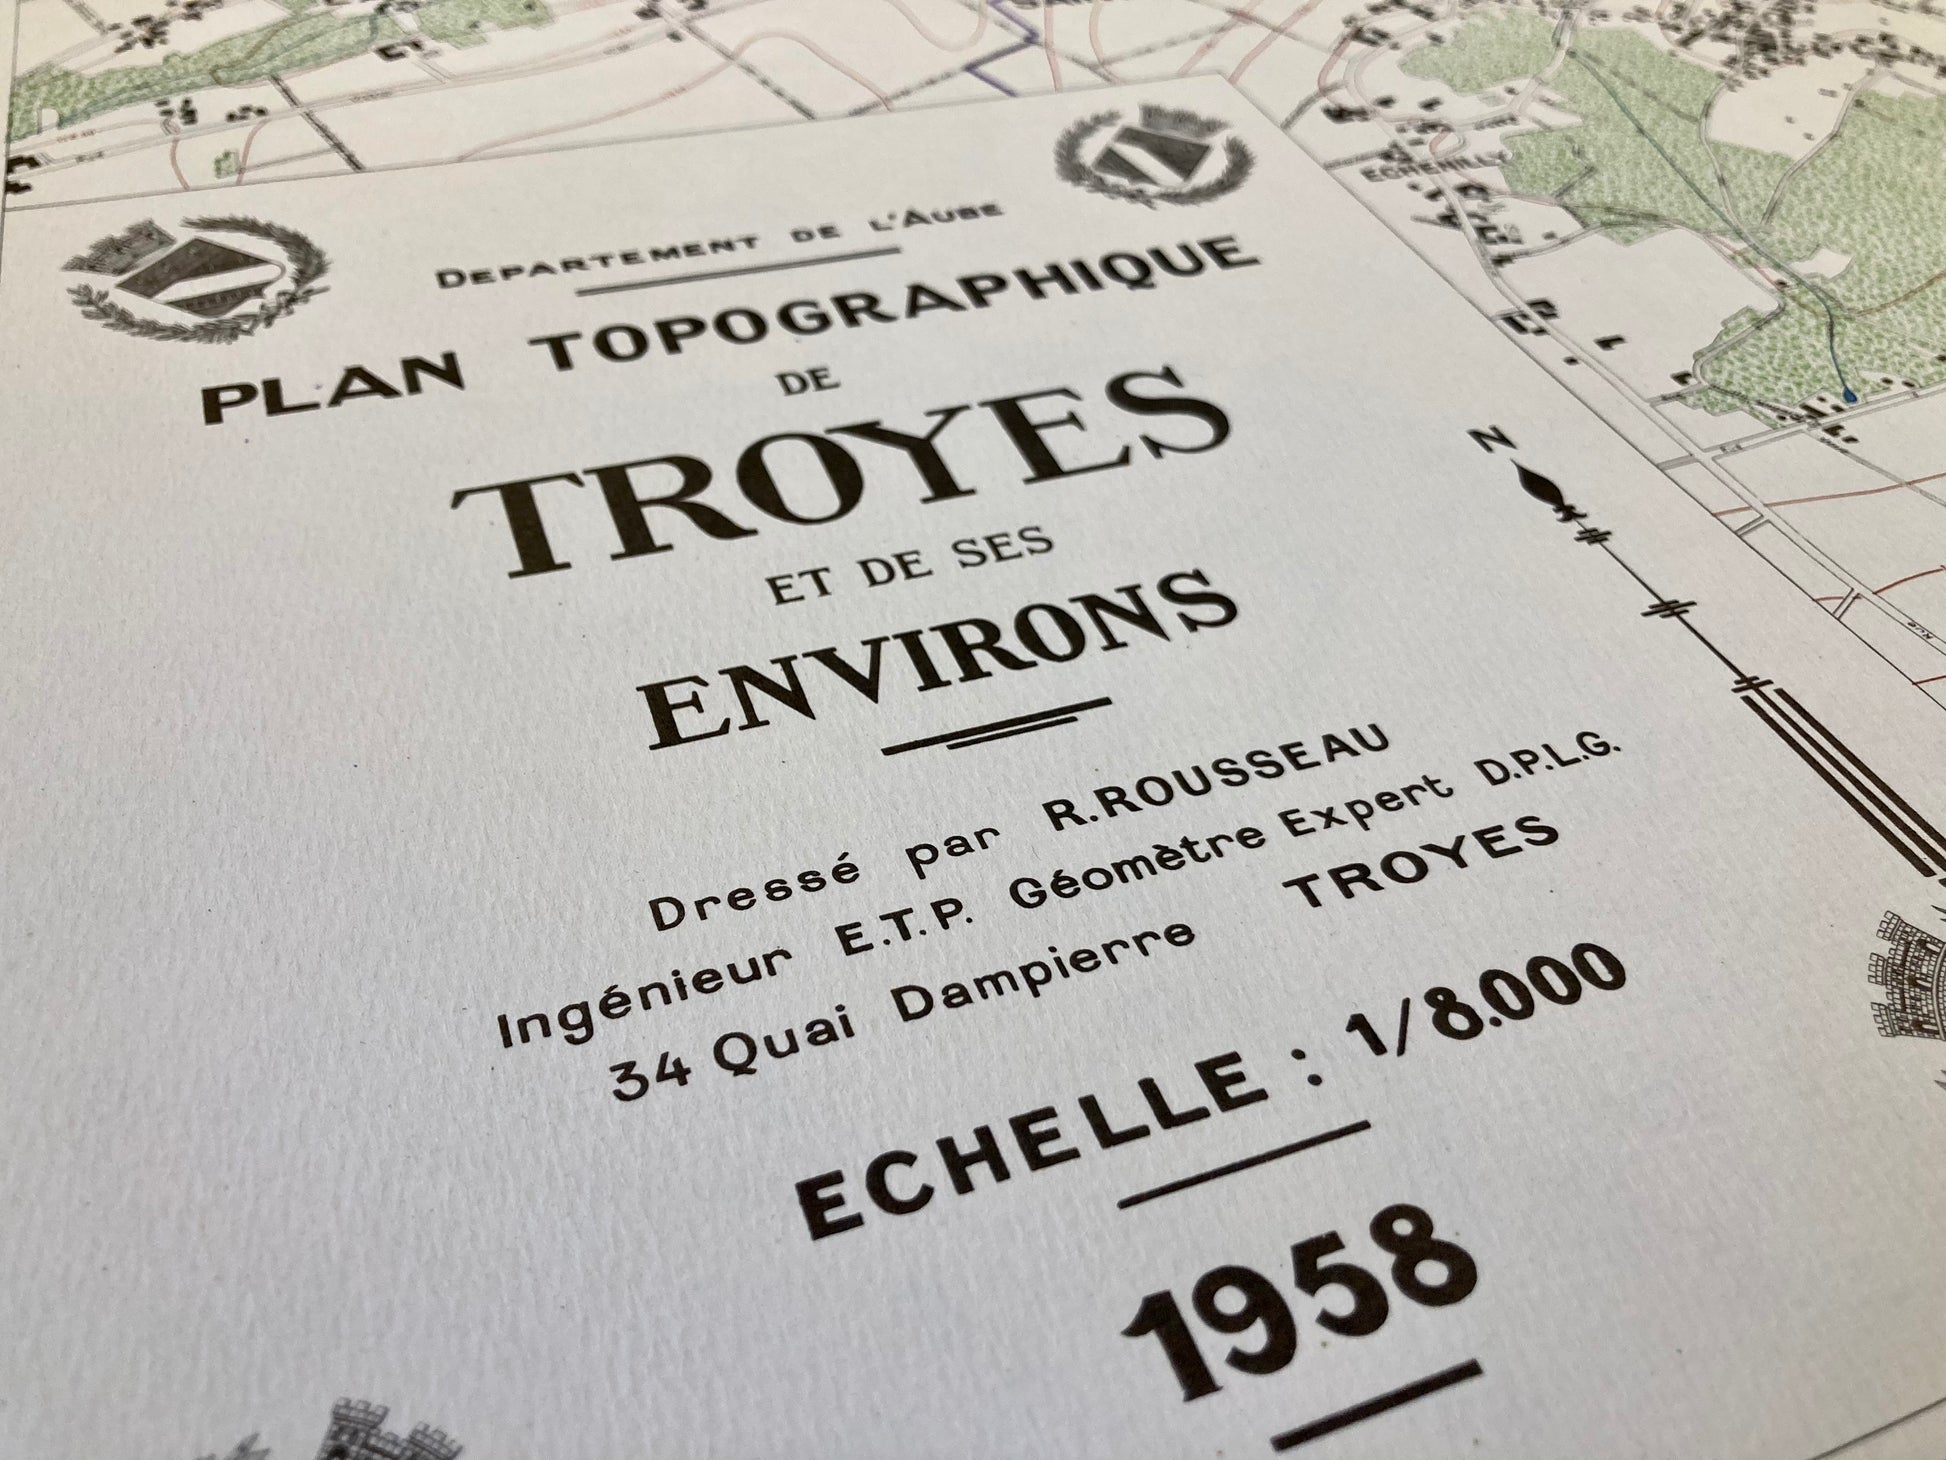 Cartouche de la carte topographique ancienne de Troyes